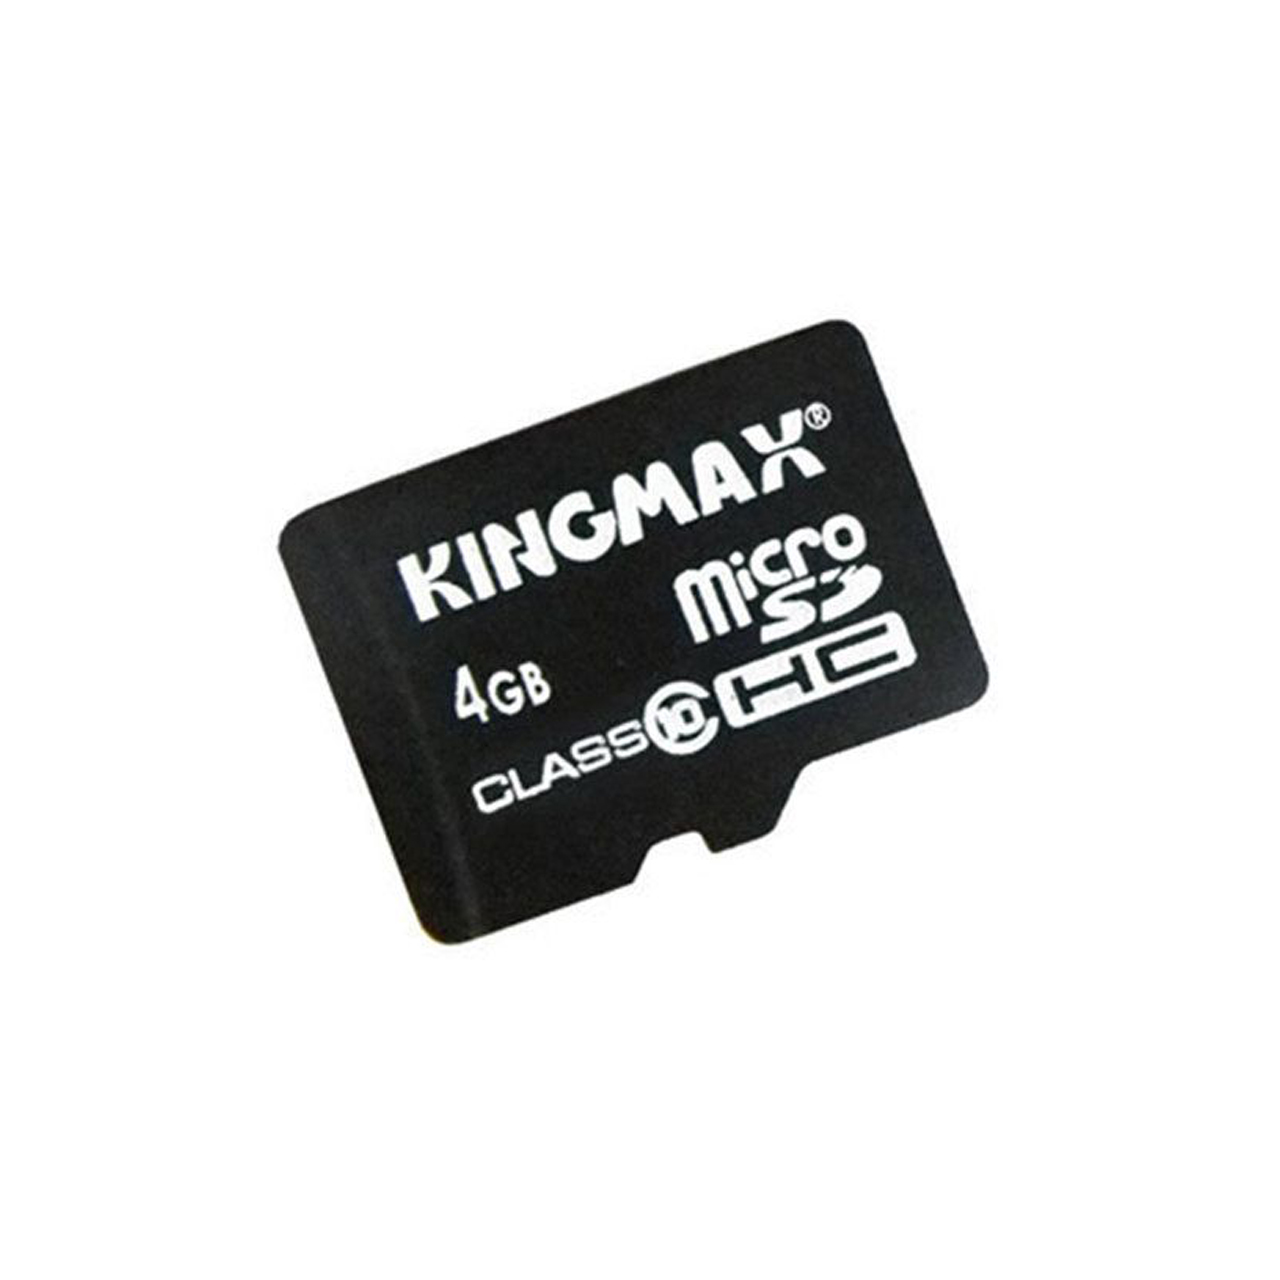 کارت حافظه microSDHC کینگ مکس کلاس 10 سرعت 10Mbps همراه با آداپتور SD ظرفیت 4 گیگابایت